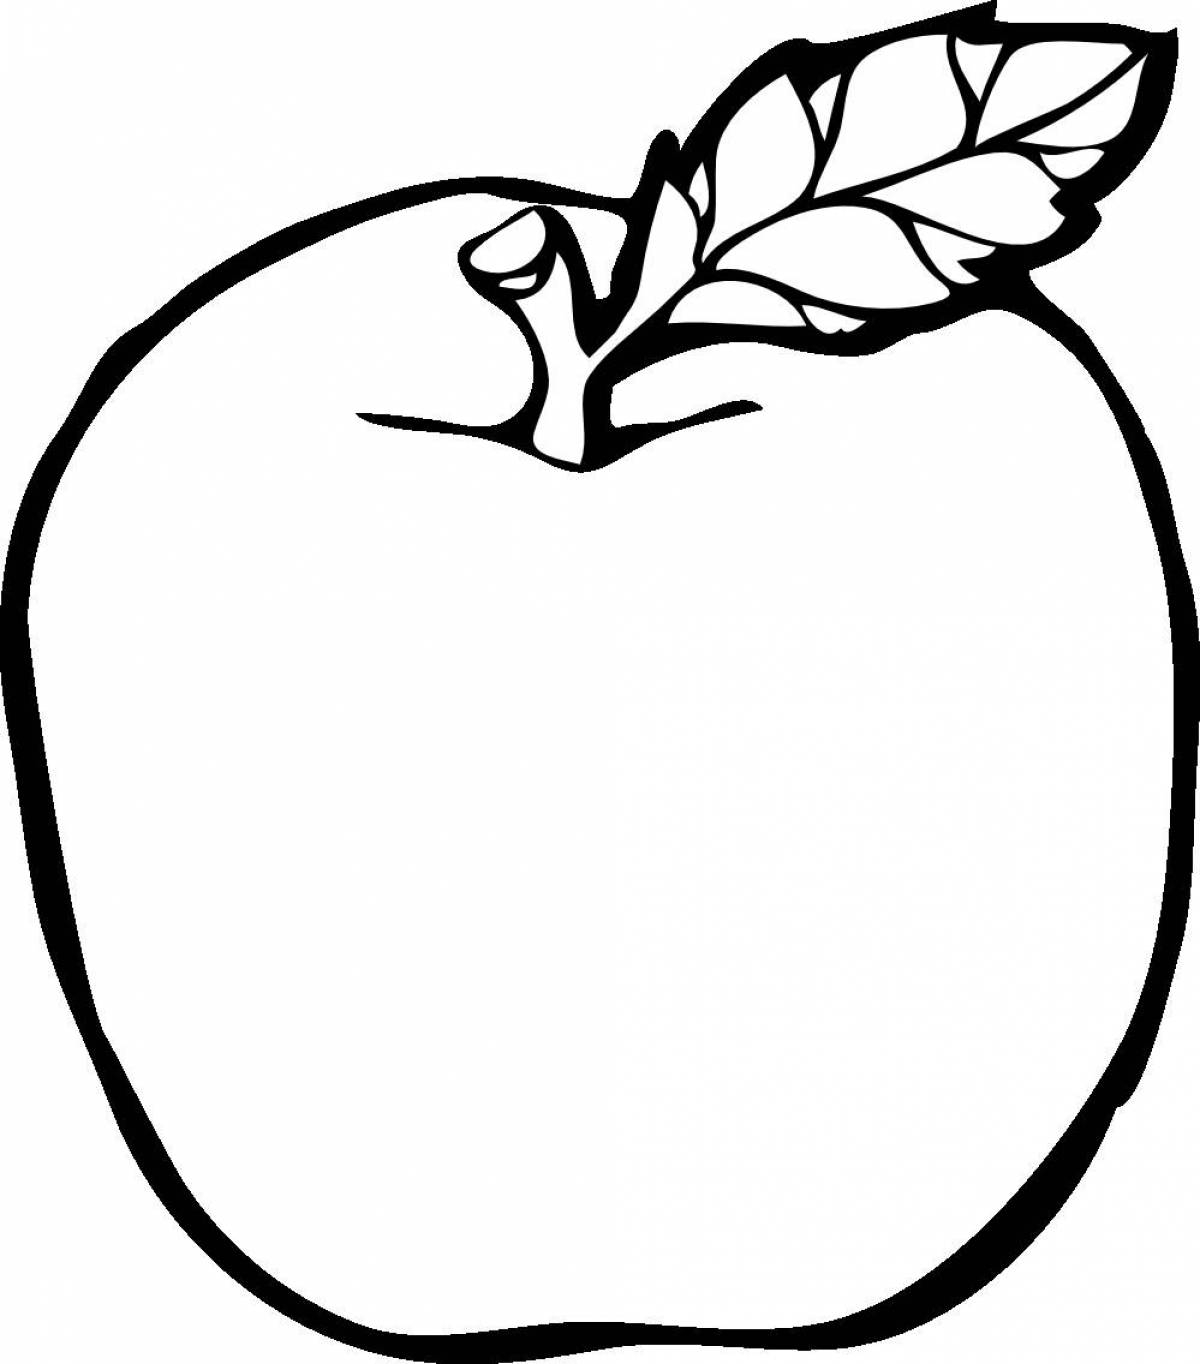 Раскраска яблоко для детей распечать бесплатно | Раскраски, Вертеп, Рисунок